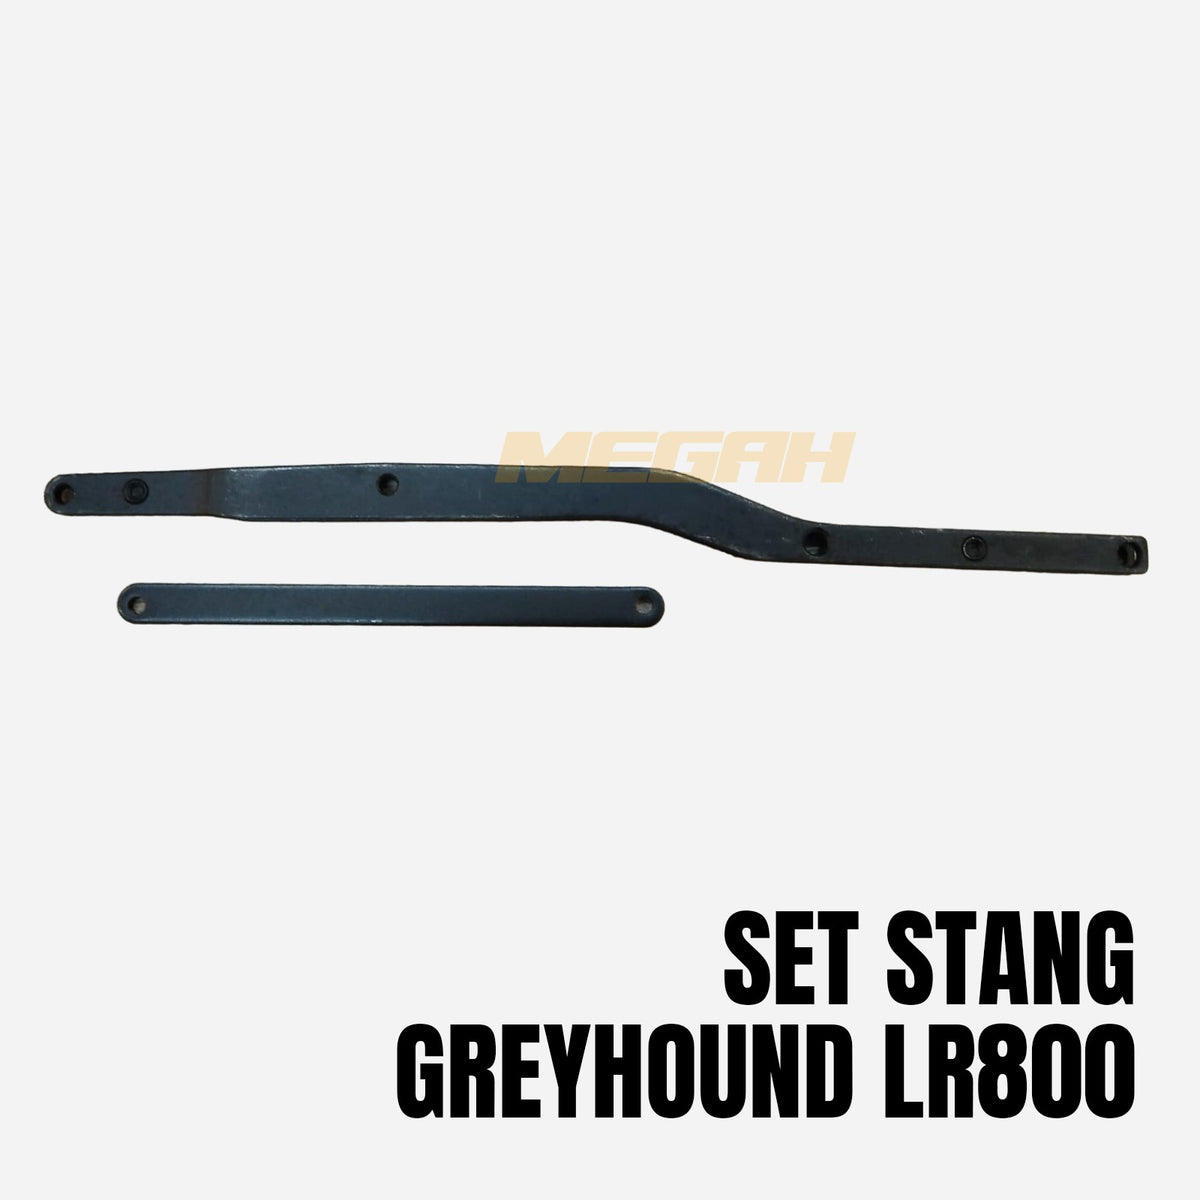 SET STANG GREYHOUND LR800